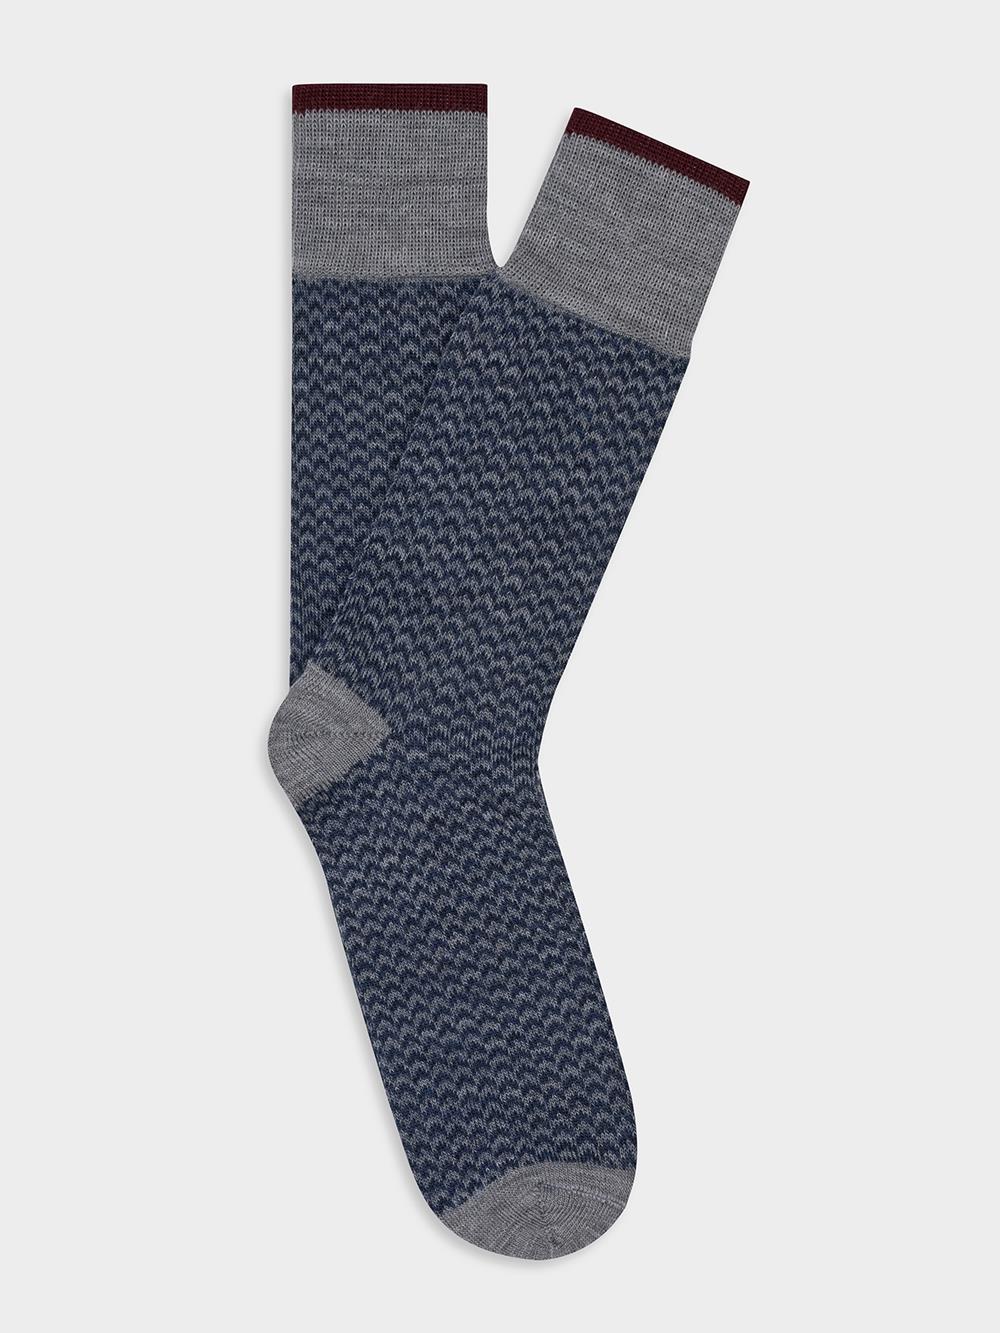 Bauer sokken in grijs visgraatmotief